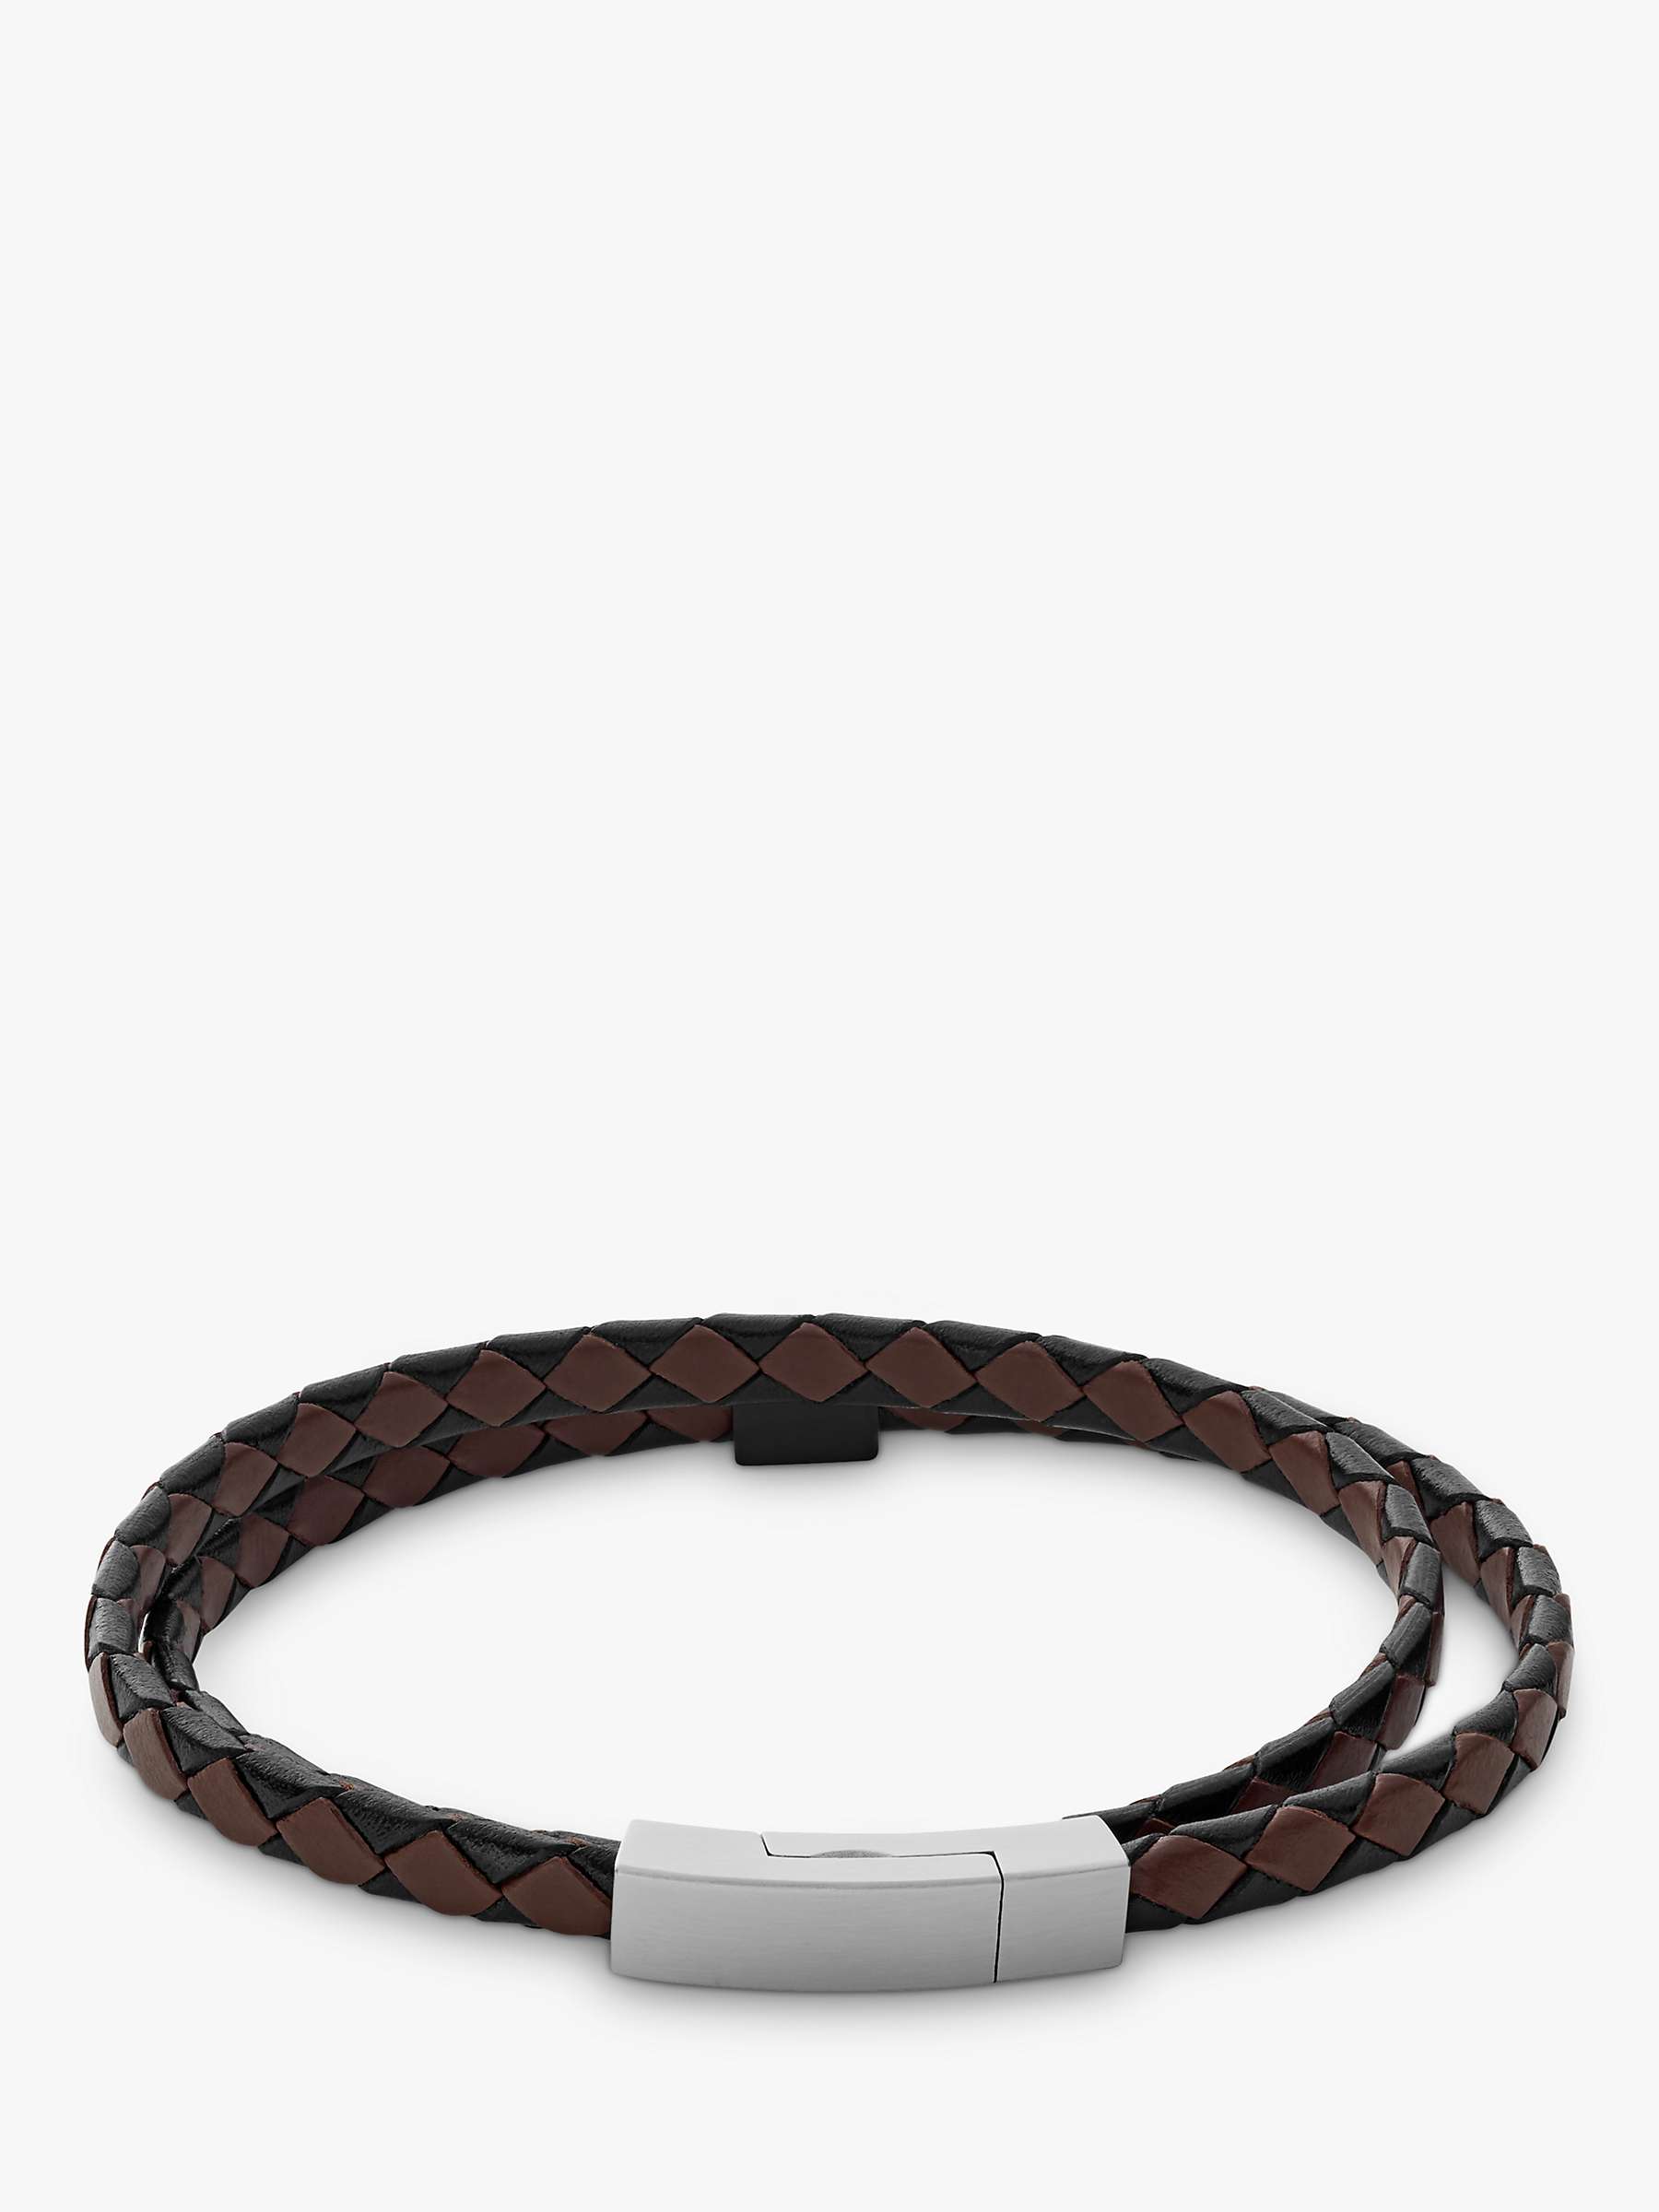 Buy Skagen Men's Leather Strap Bracelet Online at johnlewis.com